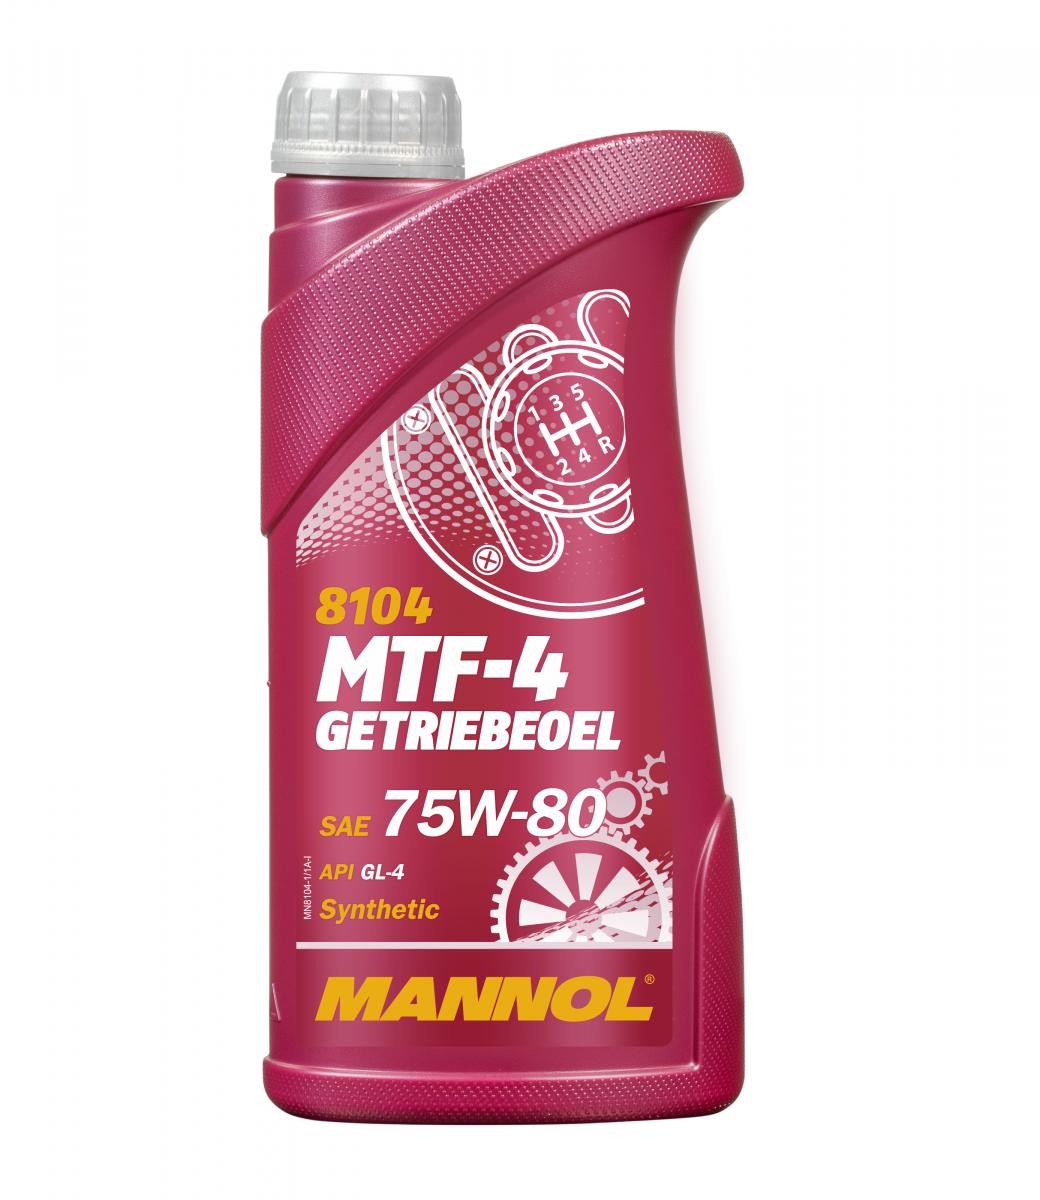 MANNOL MTF-4, GL-4 MN8104-1 ZERO Getriebeöl Motorrad zum günstigen Preis